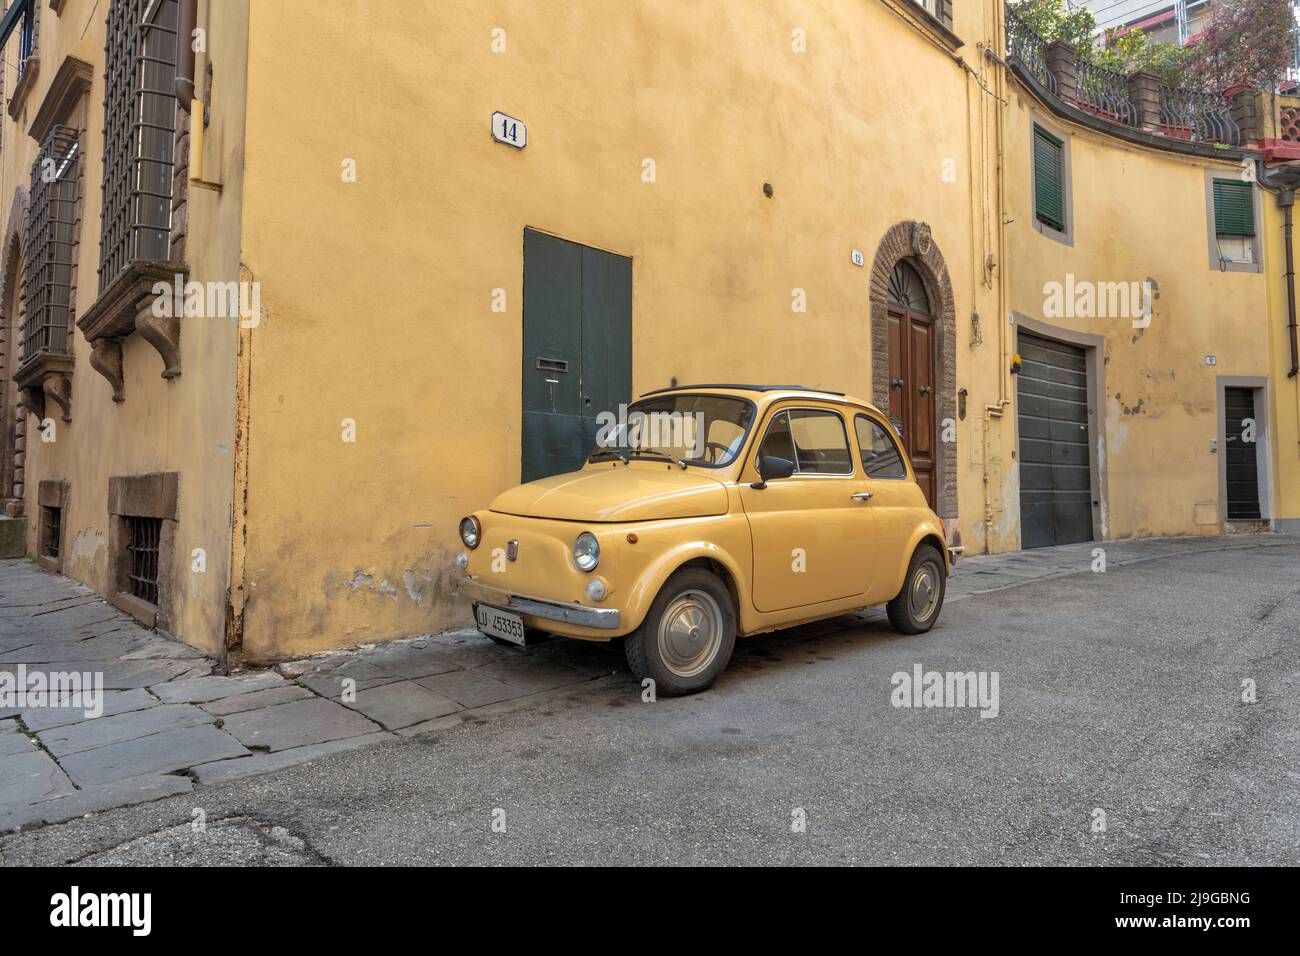 Auto classica Fiat 500 d'epoca gialla contro il muro giallo nella stretta strada medievale centro storico di Lucca Foto Stock